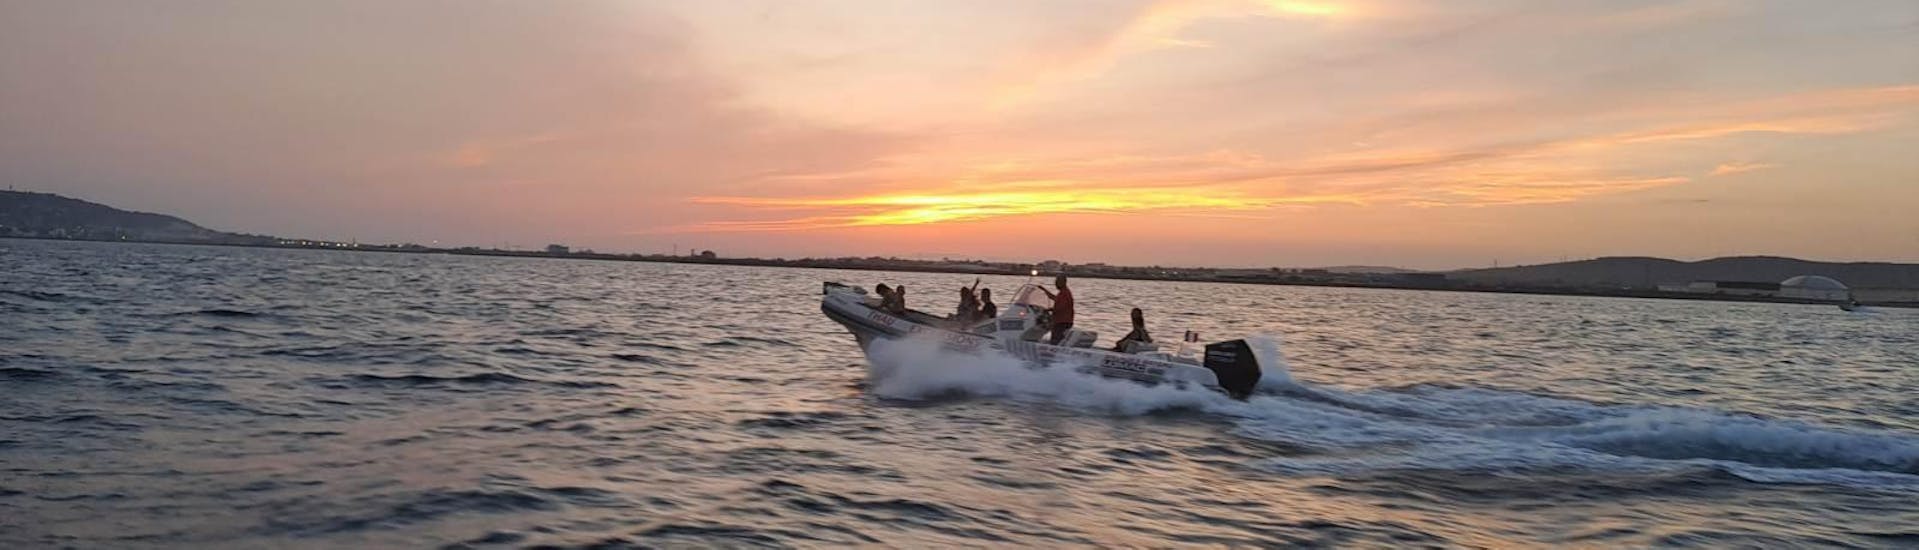 Bateau semi-rigide de Thau Excursions sur la mer au coucher de soleil.